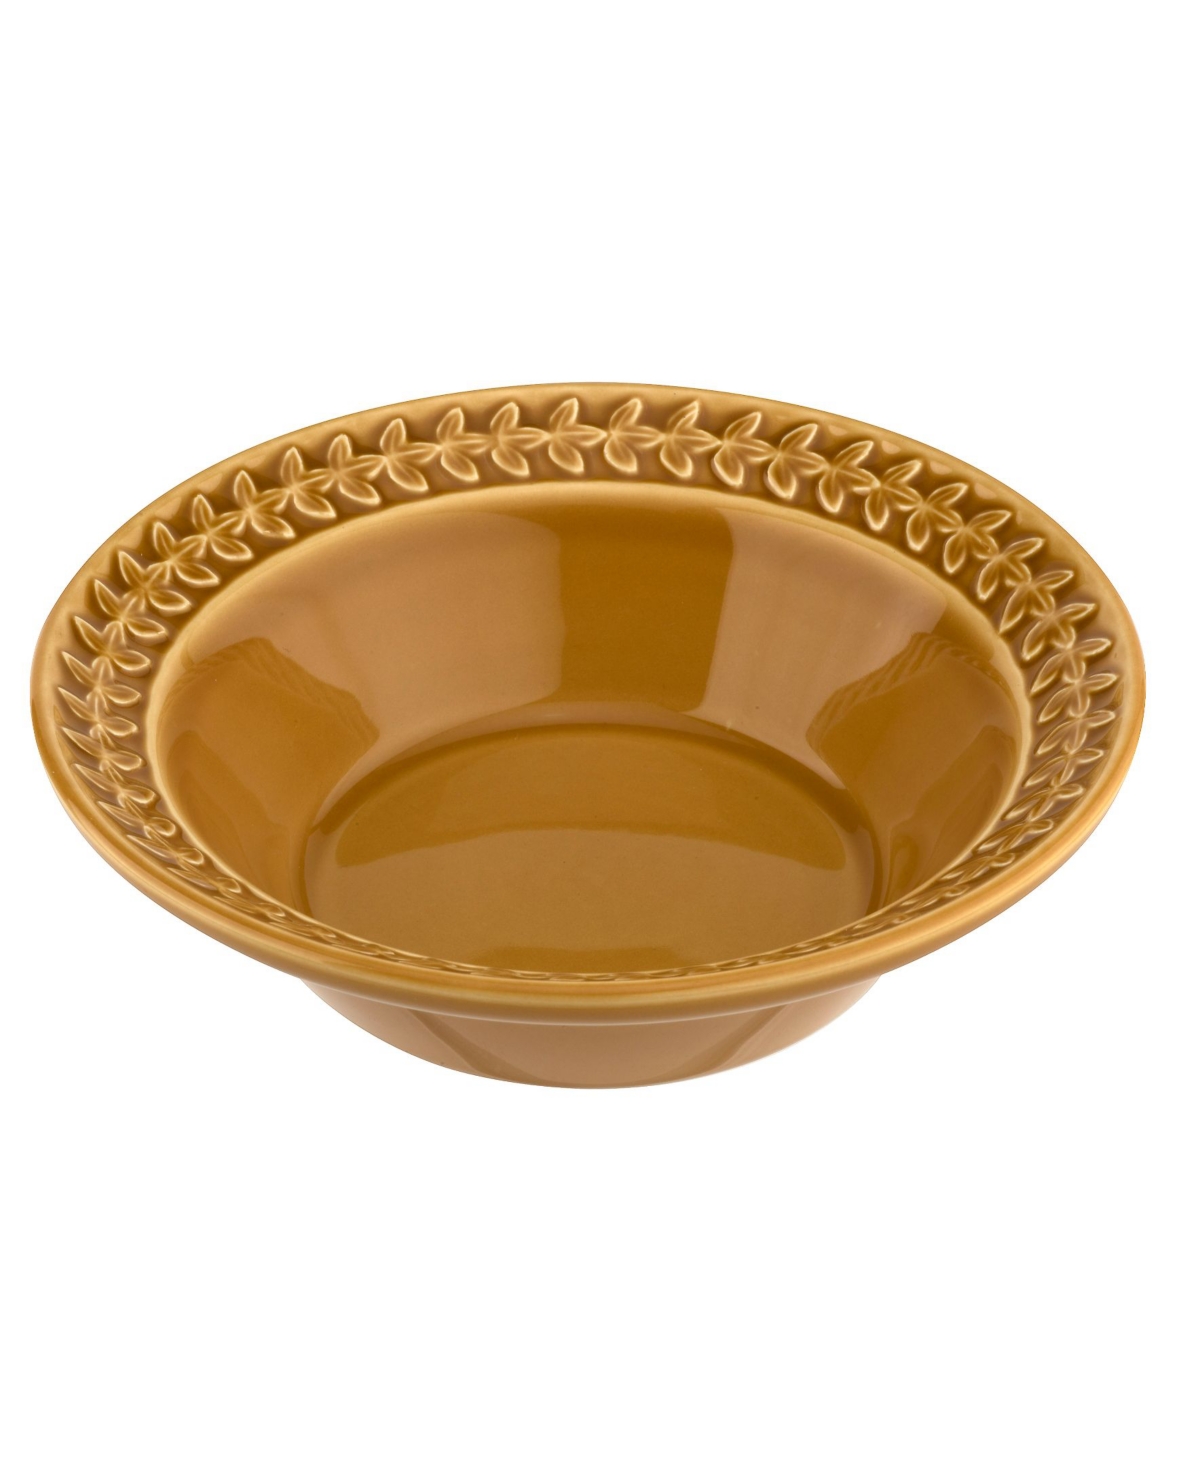 Botanic Garden Harmony Amber Cereal Bowl, Set of 4 - Gold-Tone